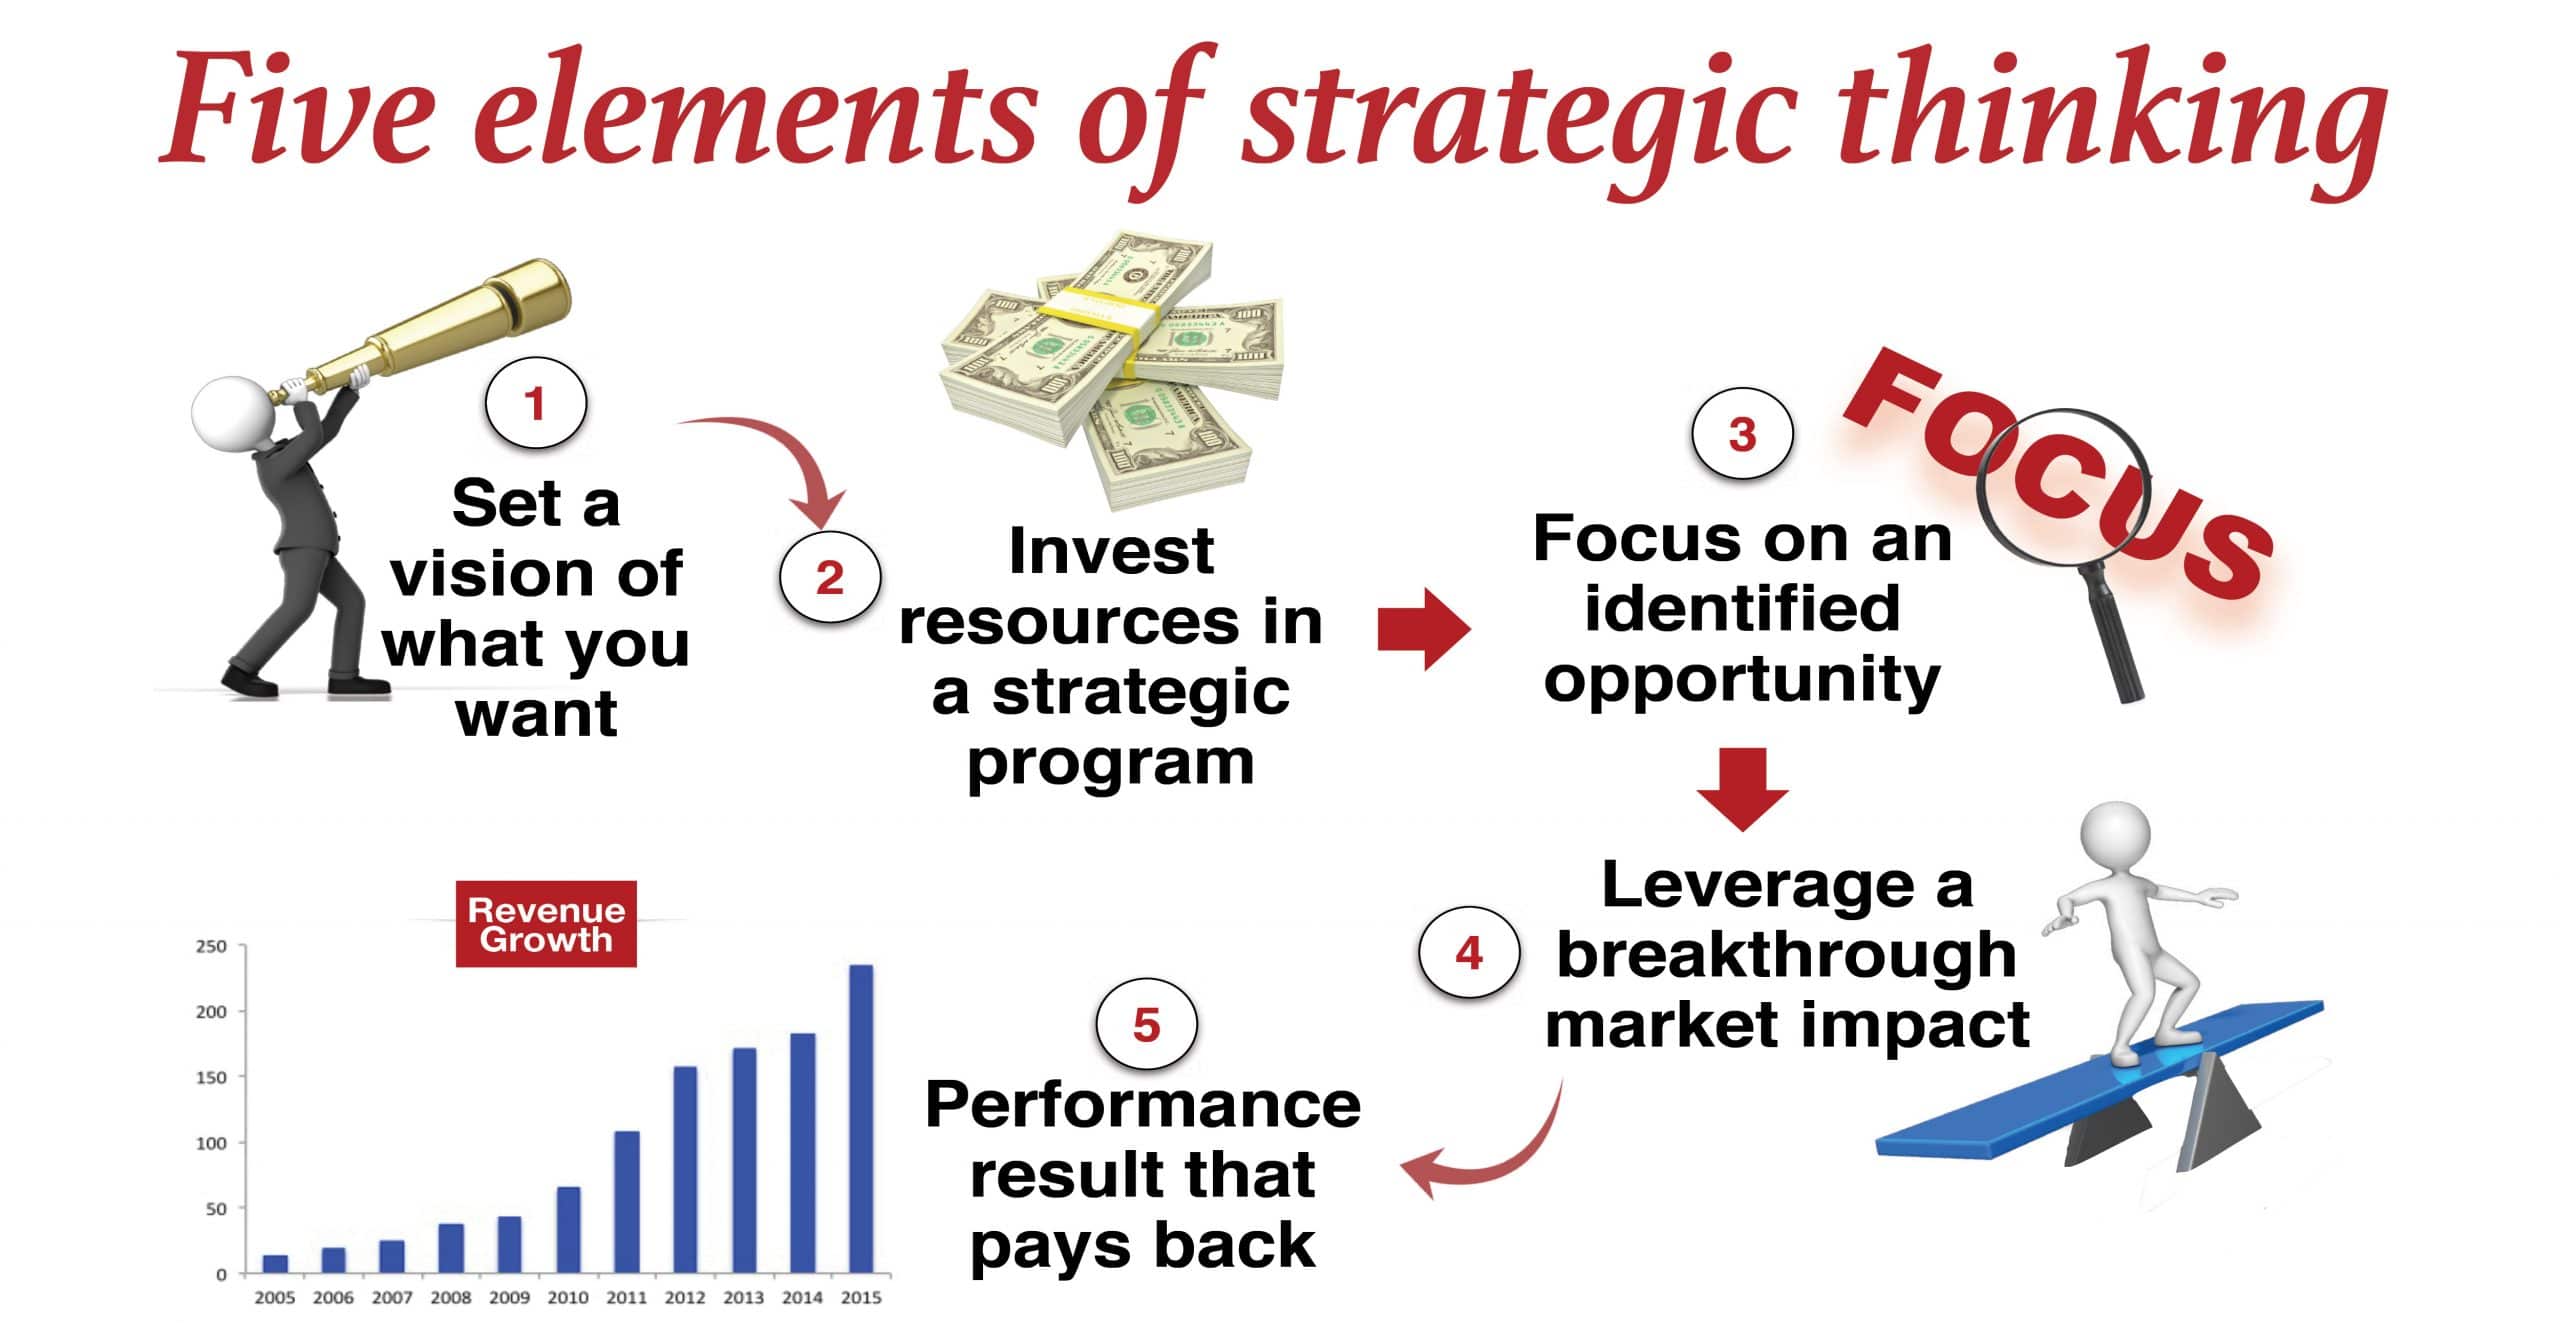 5 elements of strategic thinking